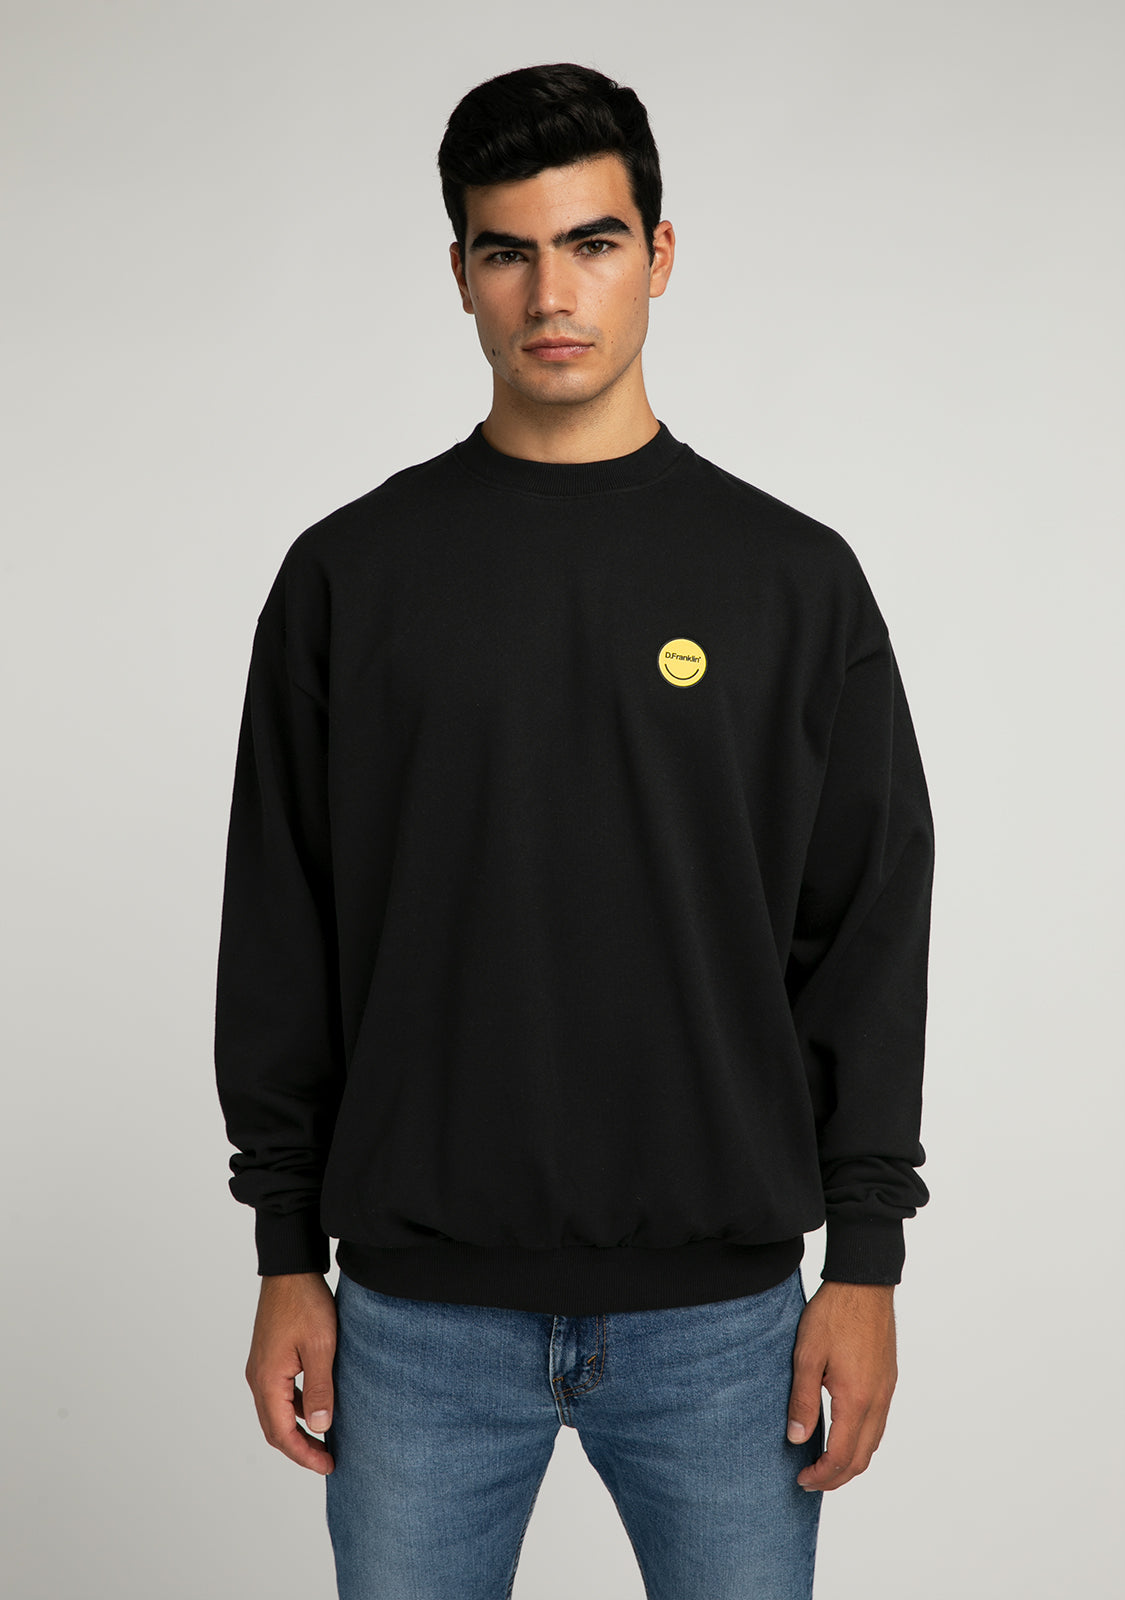 Sweatshirt Smiley Black